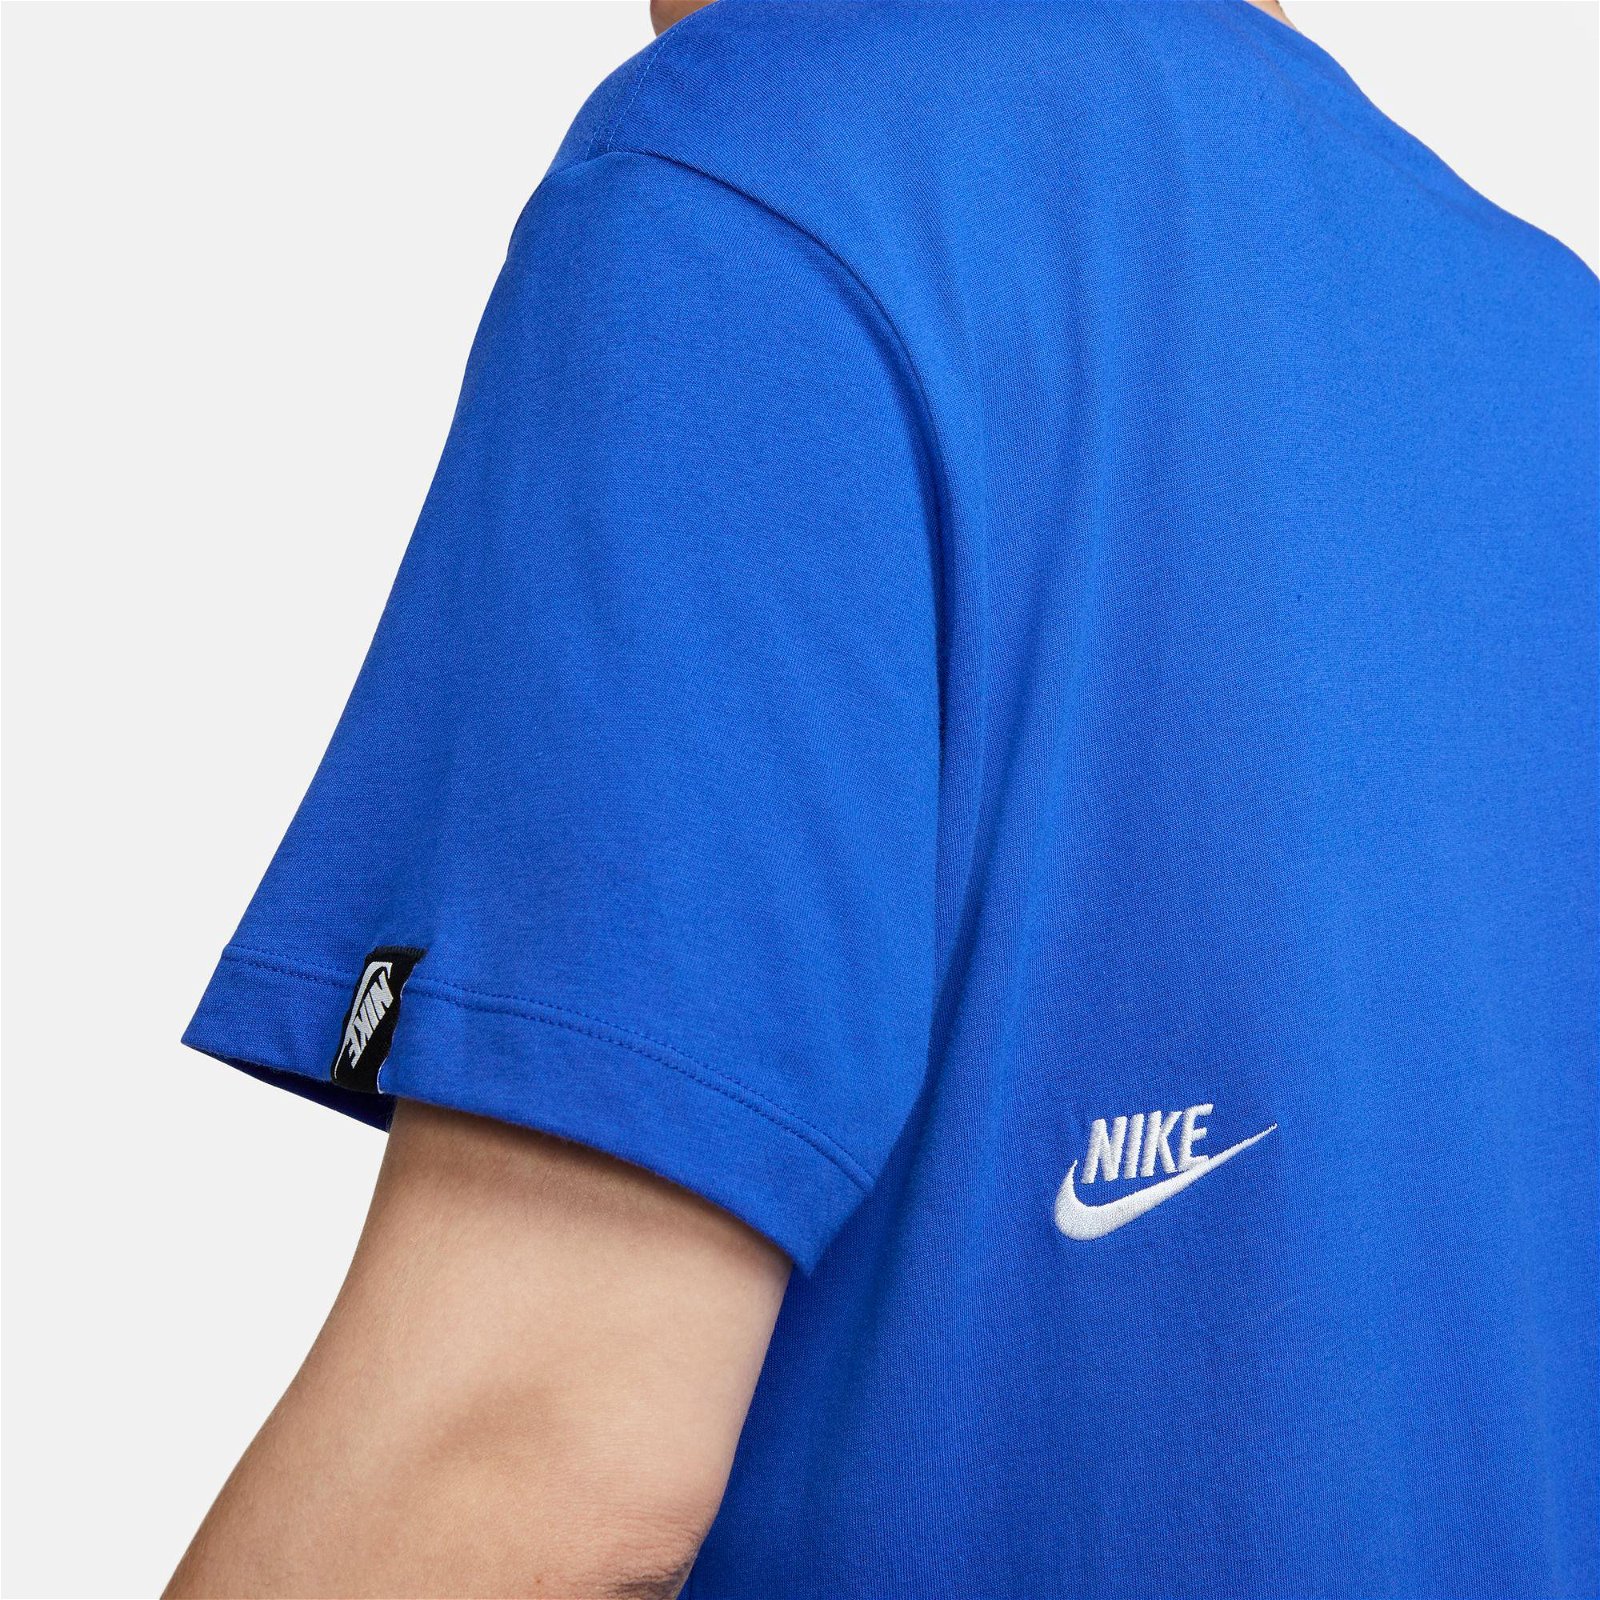 Nike Sportswear Brief Kadın Mavi T-Shirt